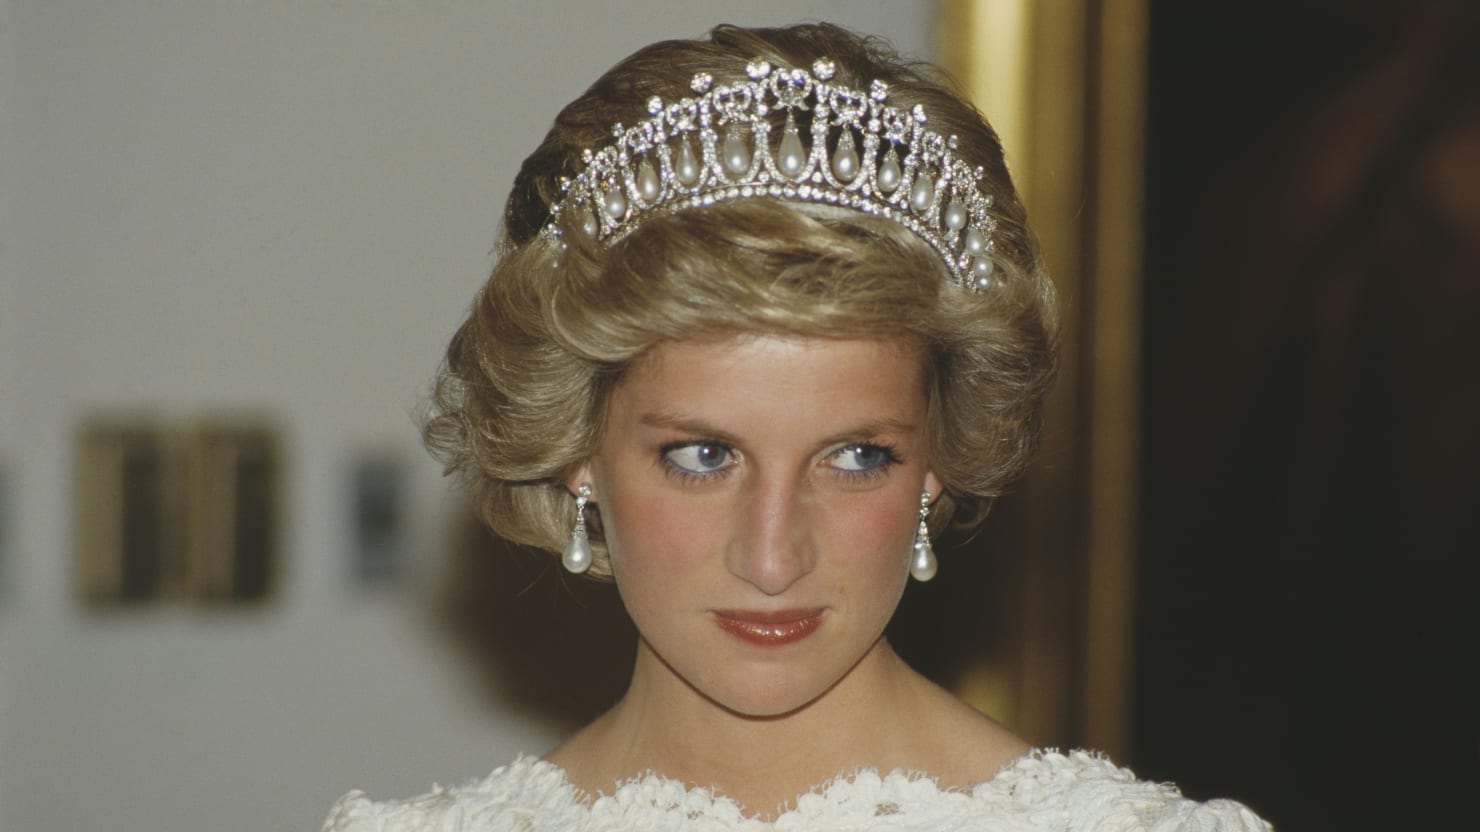 La reine Elizabeth pensait que Diana pourrait être mieux adaptée au prince Andrew : rapport